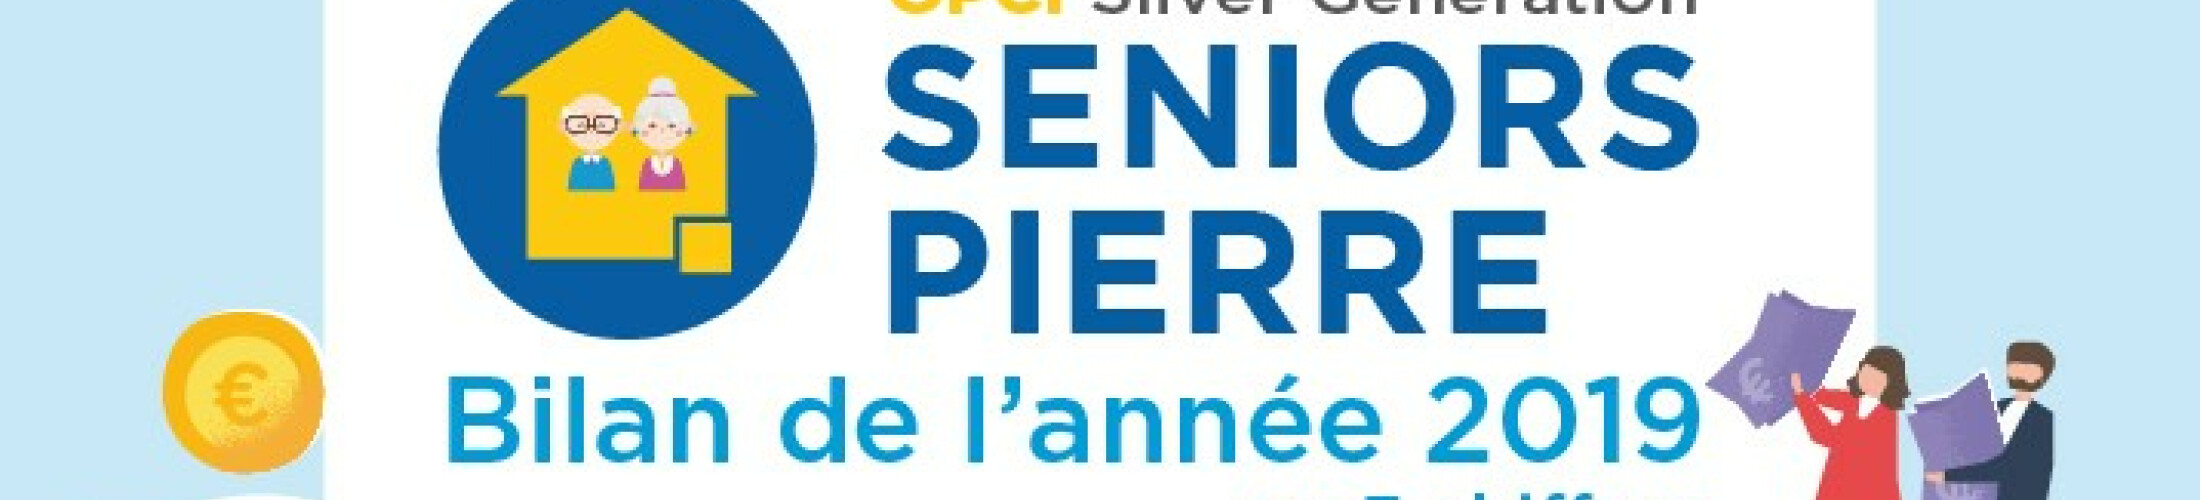 Pierre-papier : quelle performance pour l’OPCI Seniors Pierre ?